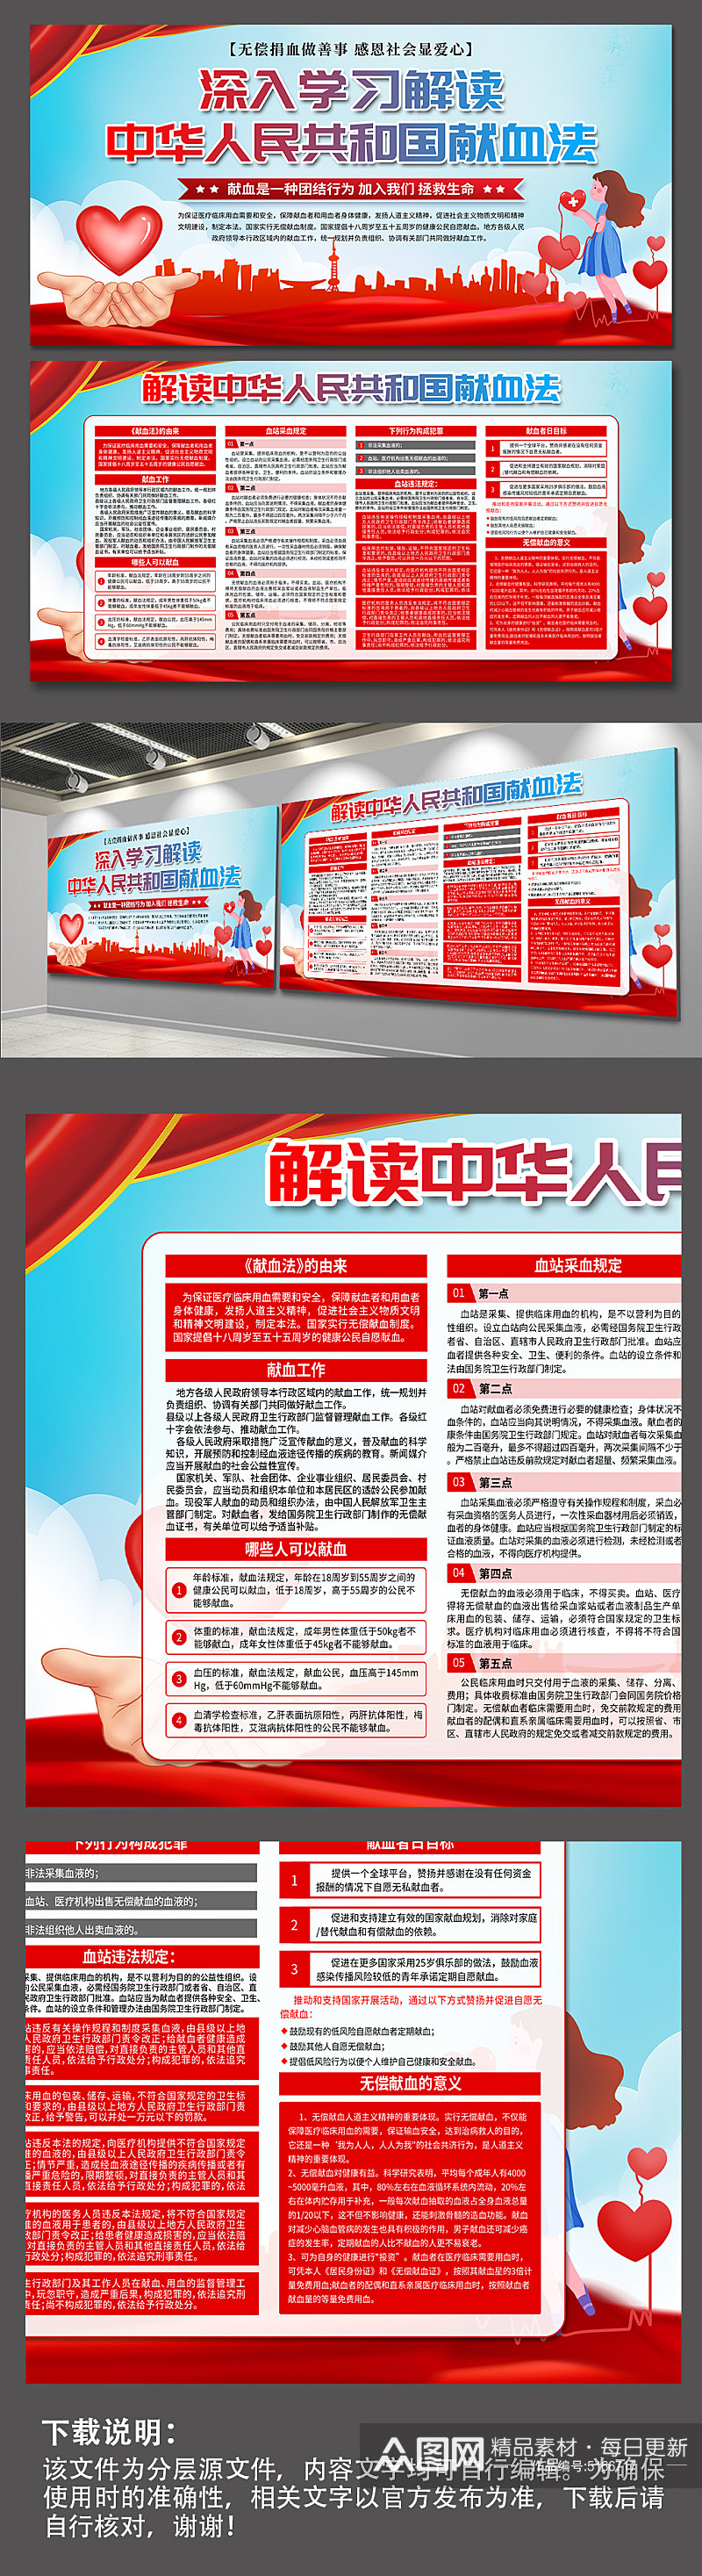 大气中华人民共和国献血法展板素材